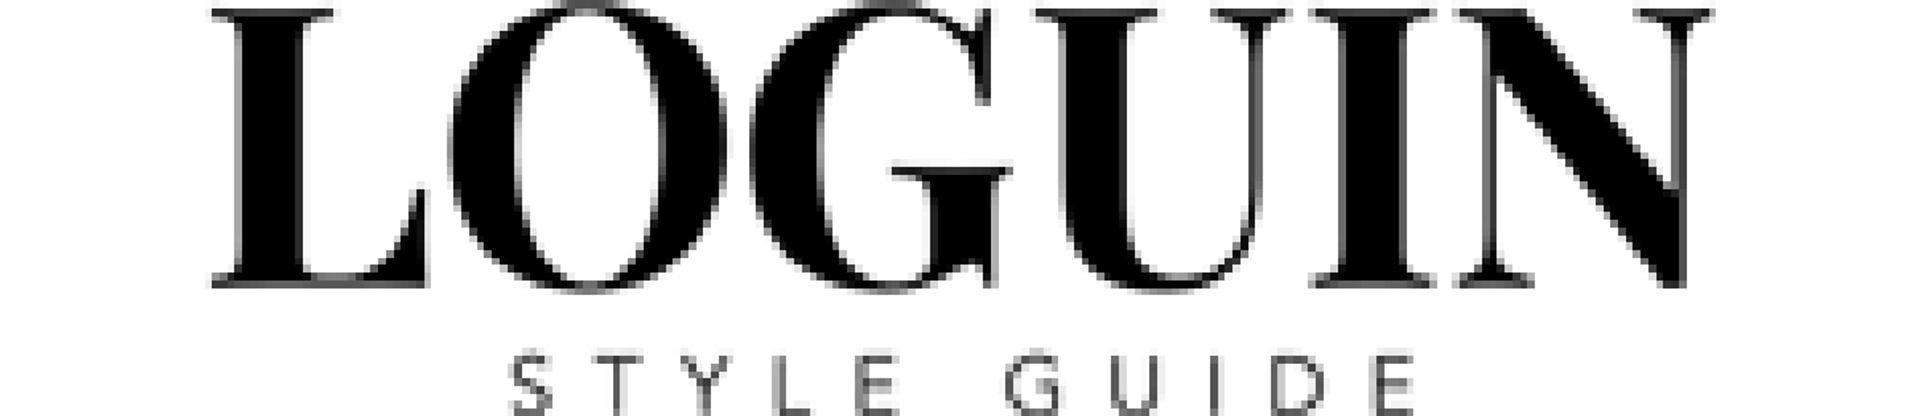 LOGUIN logo de catálogo